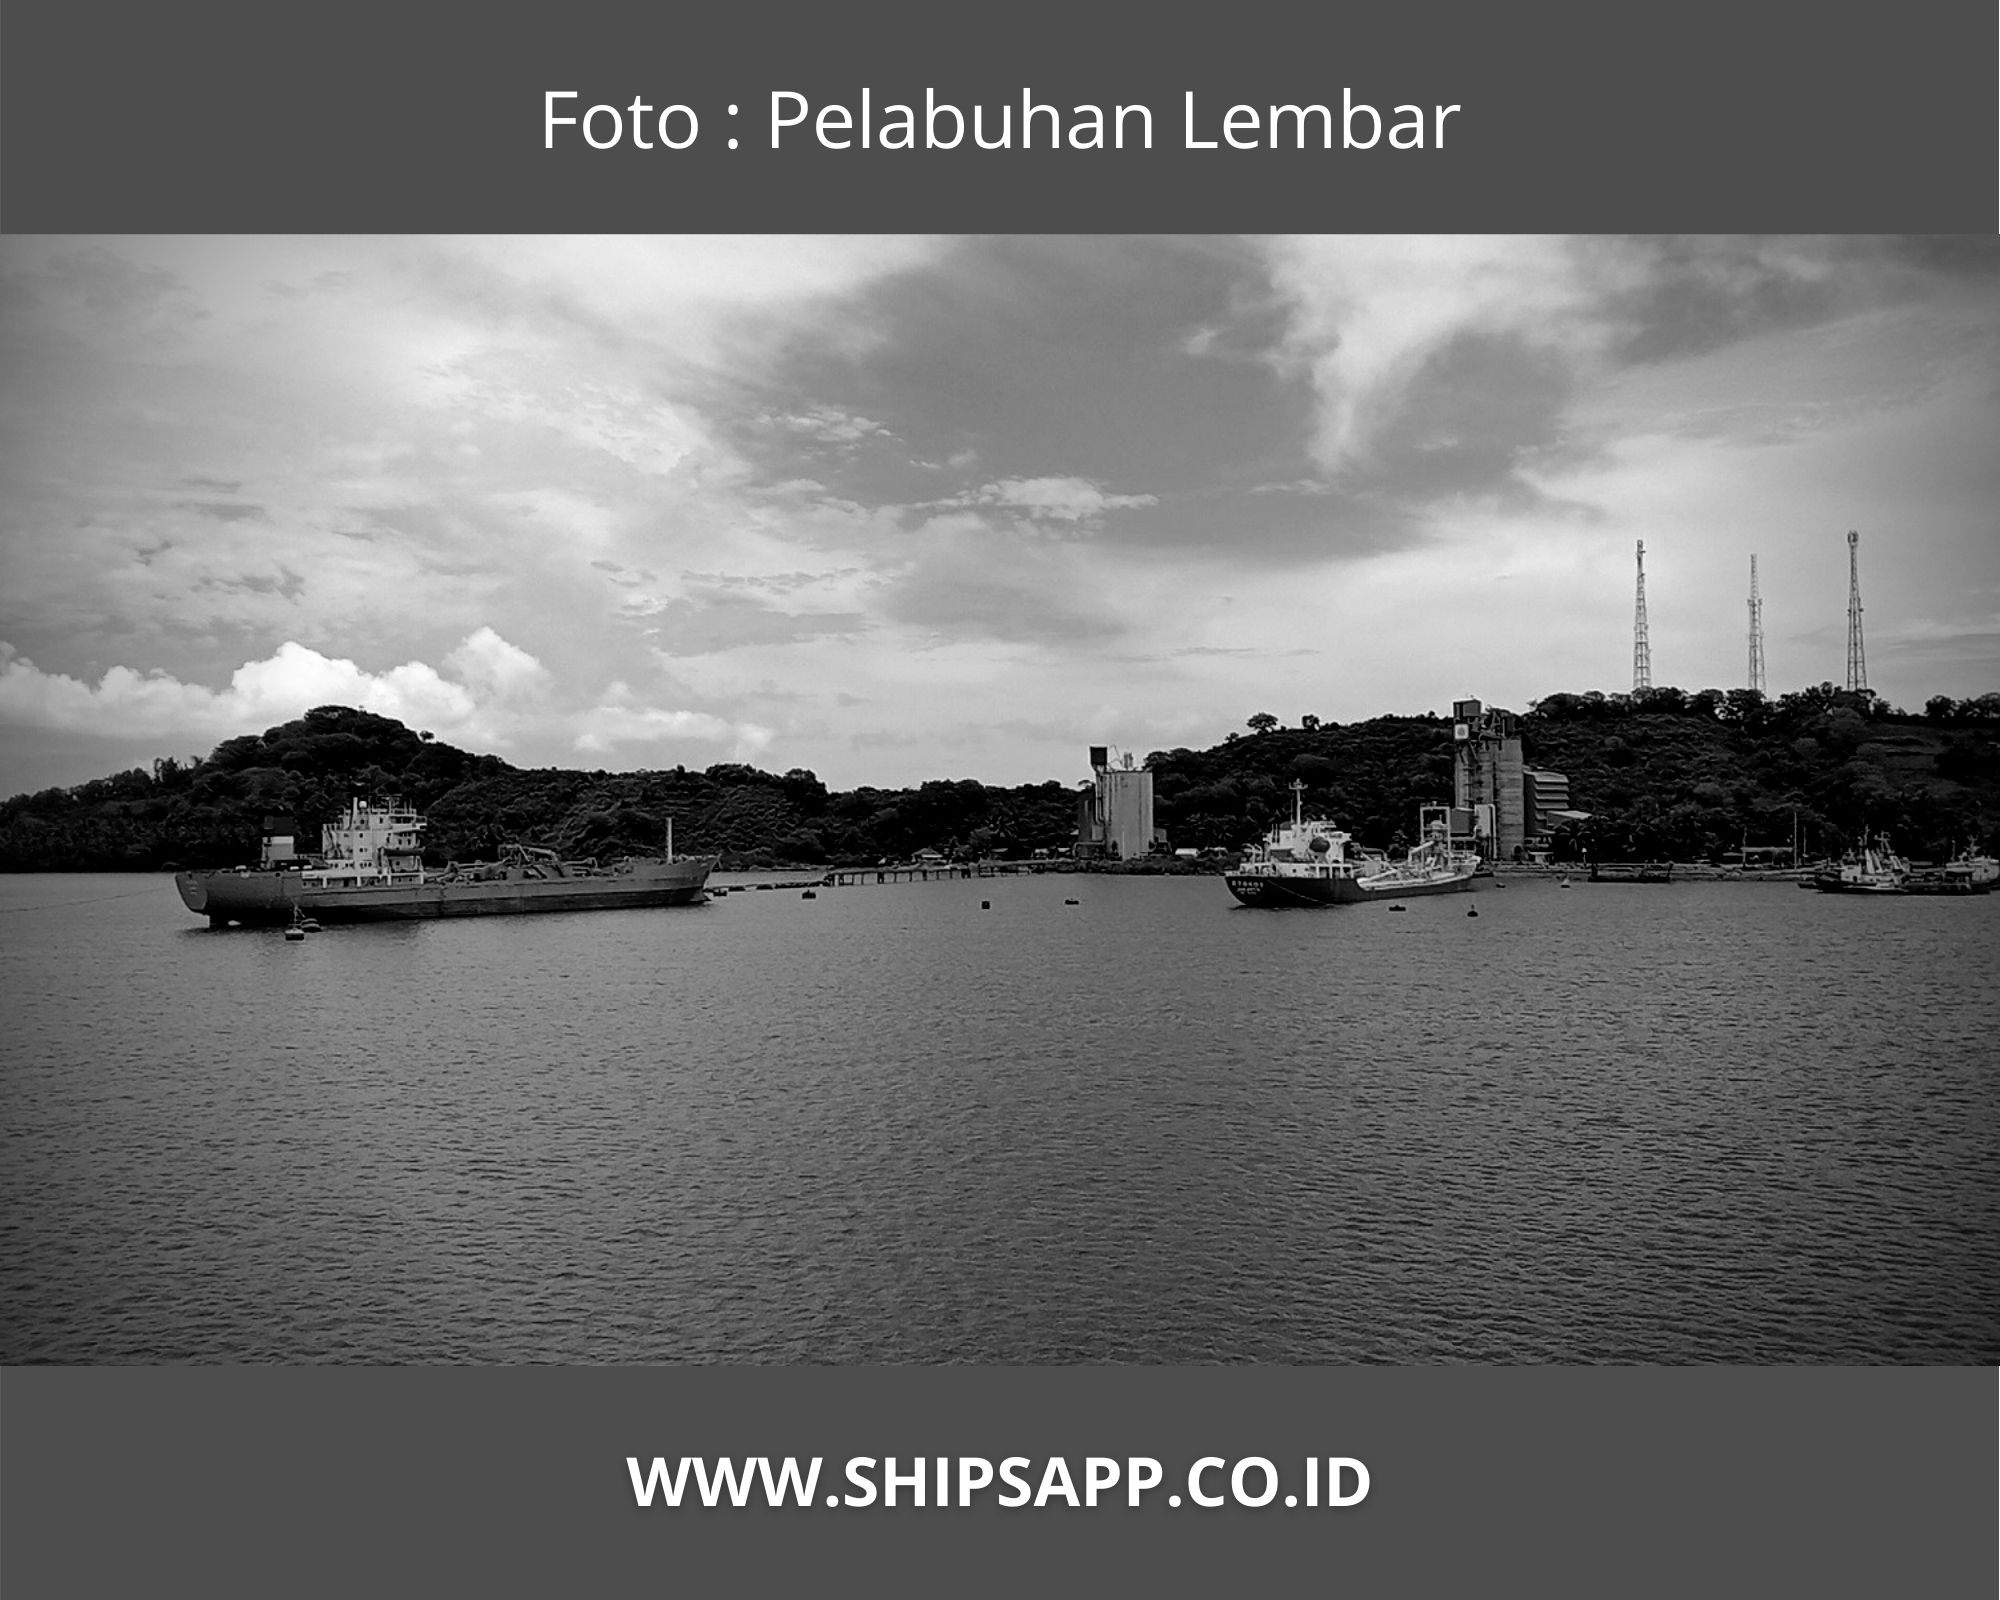 Sejarah Pelabuhan Lembar